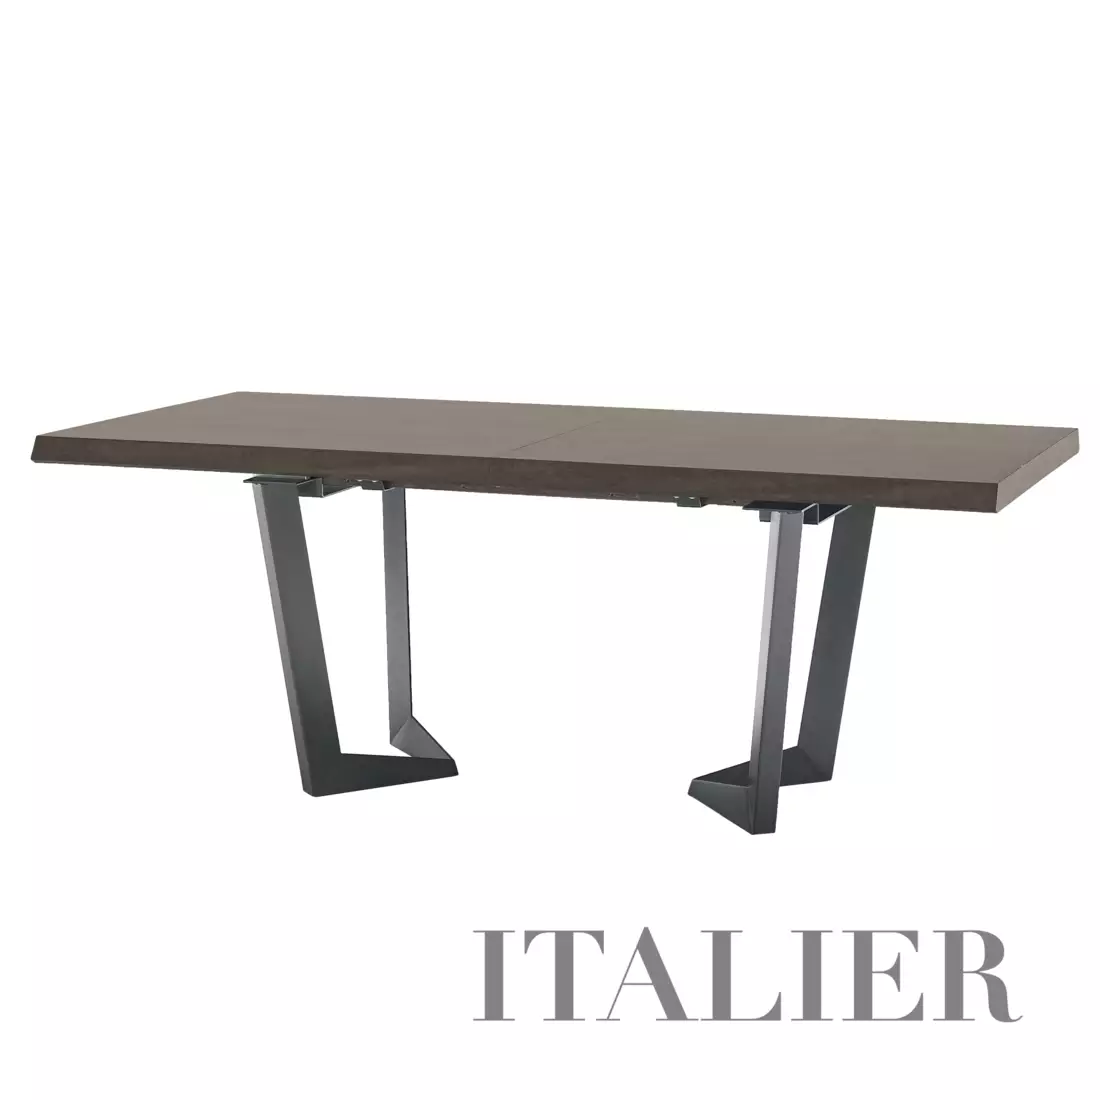 TABLE-NET-9326